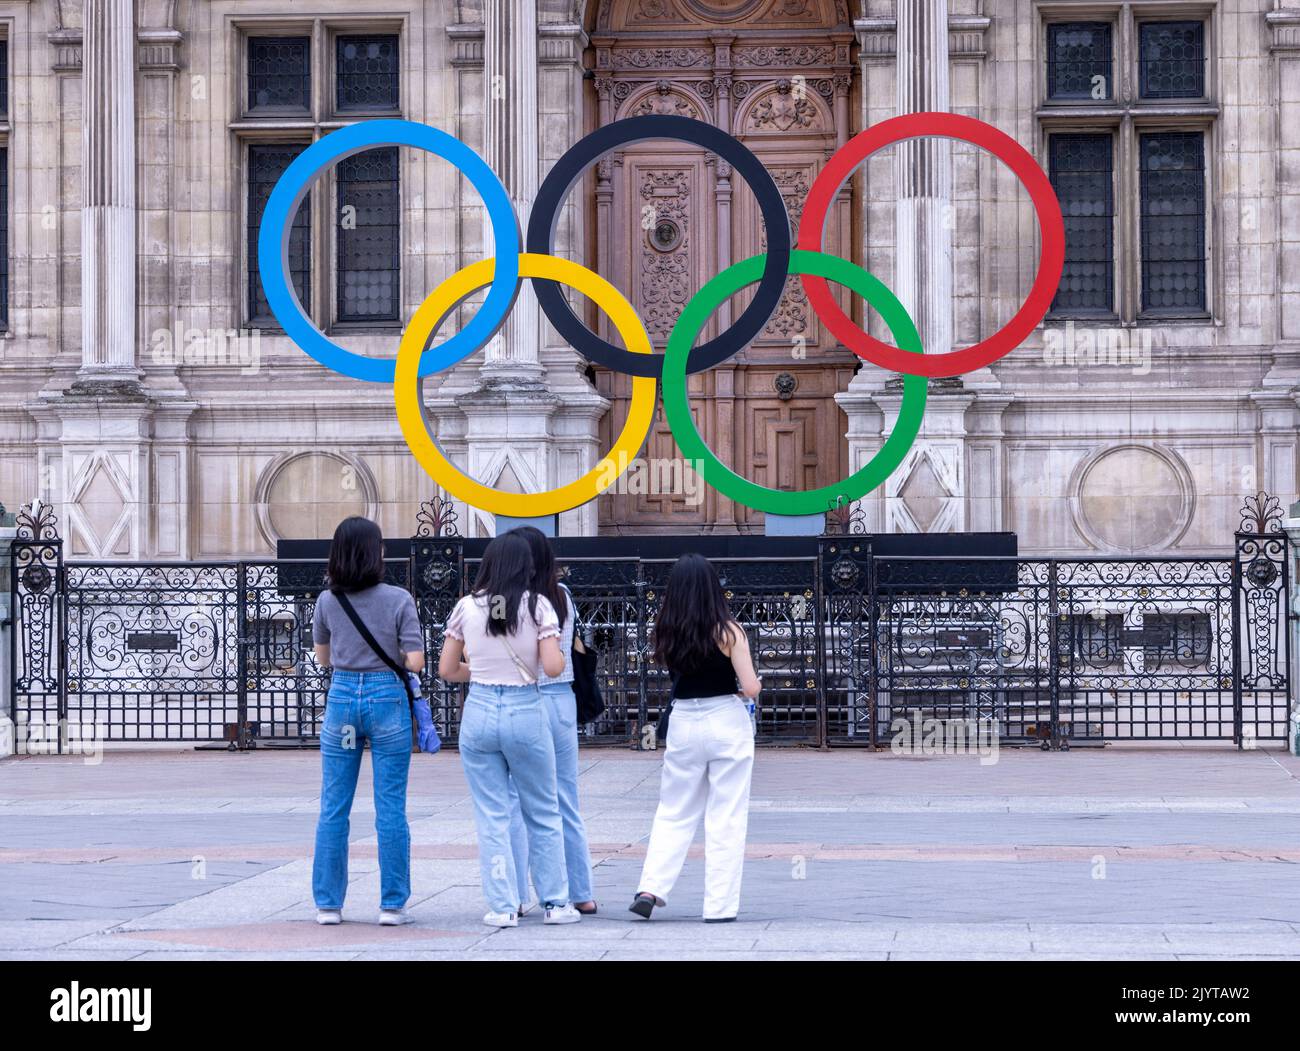 Asiatische Touristen fotografieren vor dem Schild der Olpymic Games am Hôtel de Ville, dem Rathaus von Paris, Frankreich Stockfoto